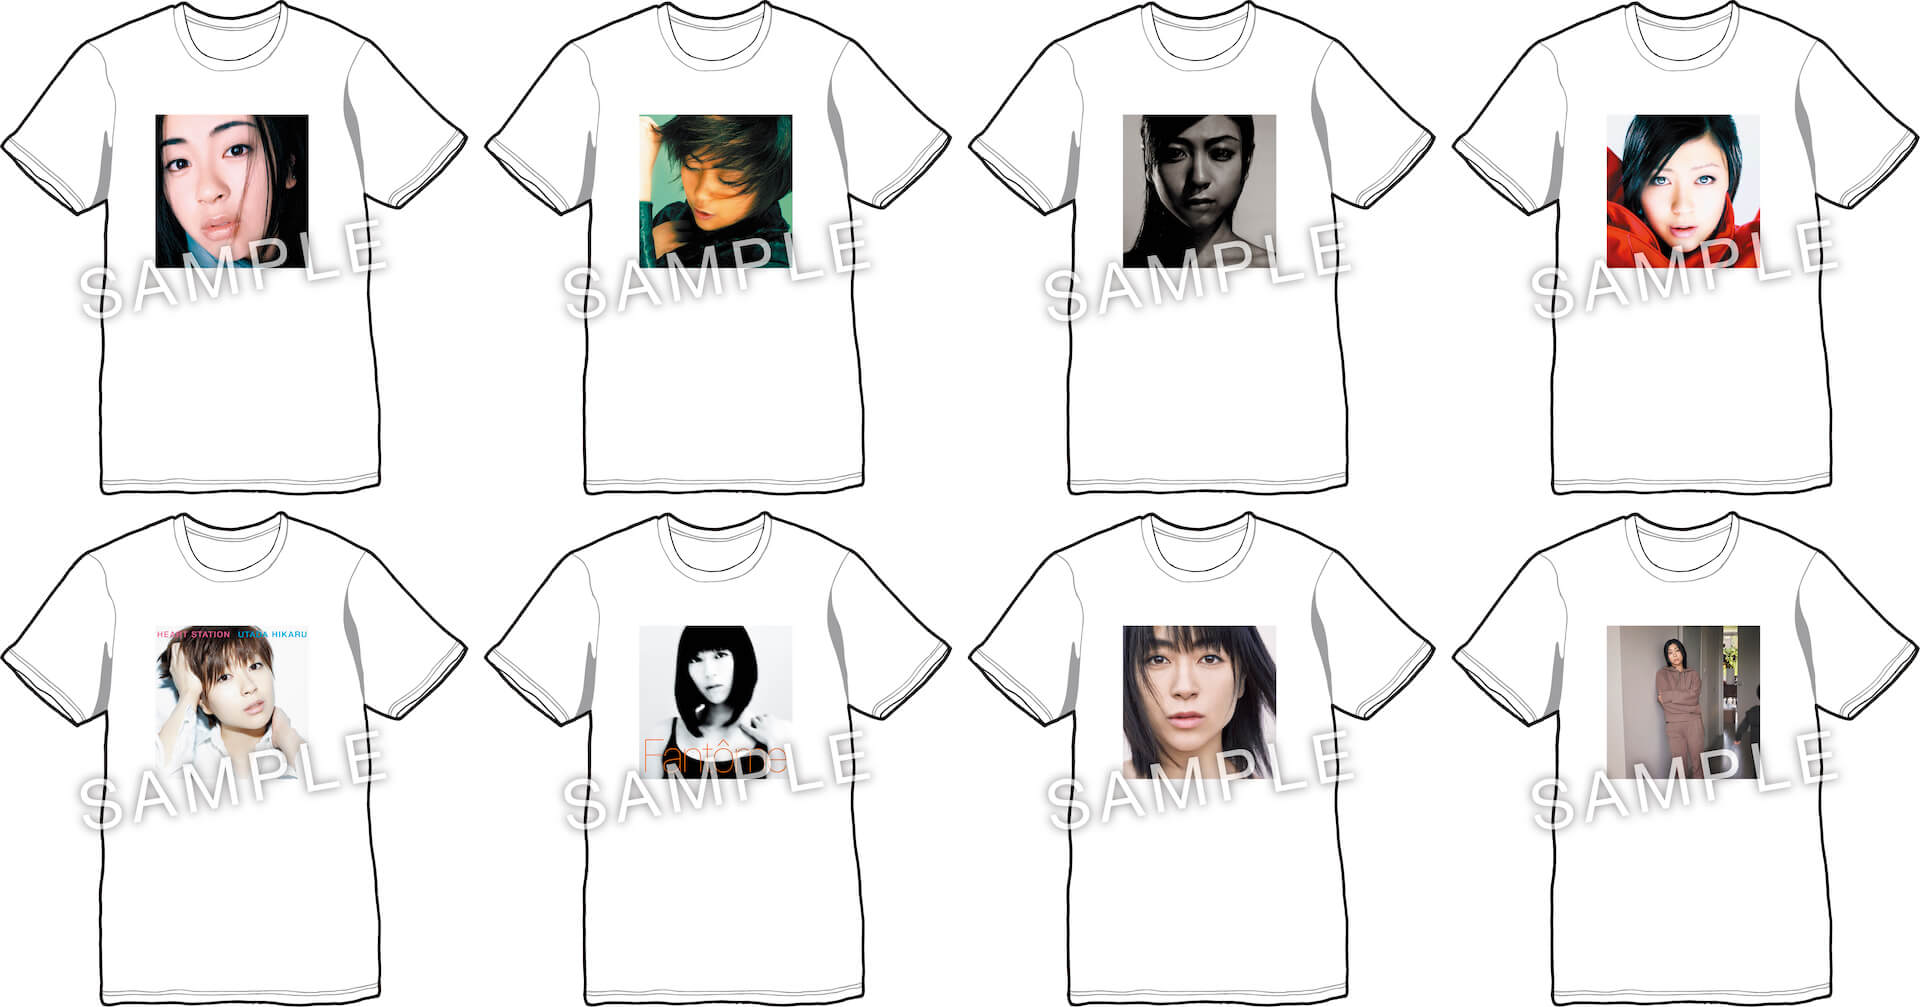 宇多田ヒカル 最新アルバム Badモード 含むアナログ盤購入者プレゼントのtシャツデザインが公開 Qetic